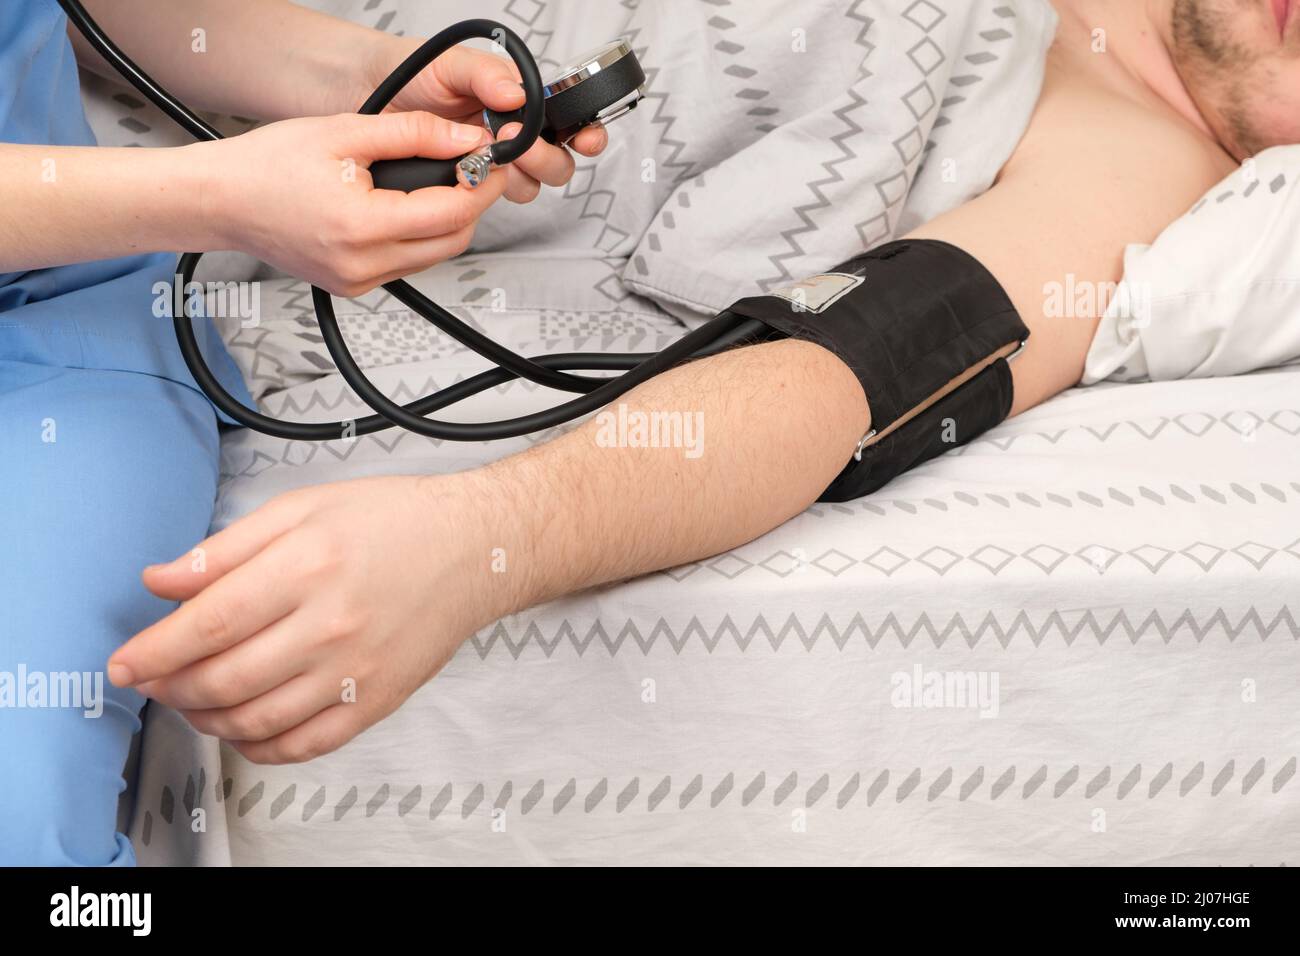 Der Arzt misst den Blutdruck des im Bett liegenden Mannes. Erkrankungen des Herzens und der Blutgefäße beim Menschen, mechanischer Tonometer aus nächster Nähe. Stockfoto